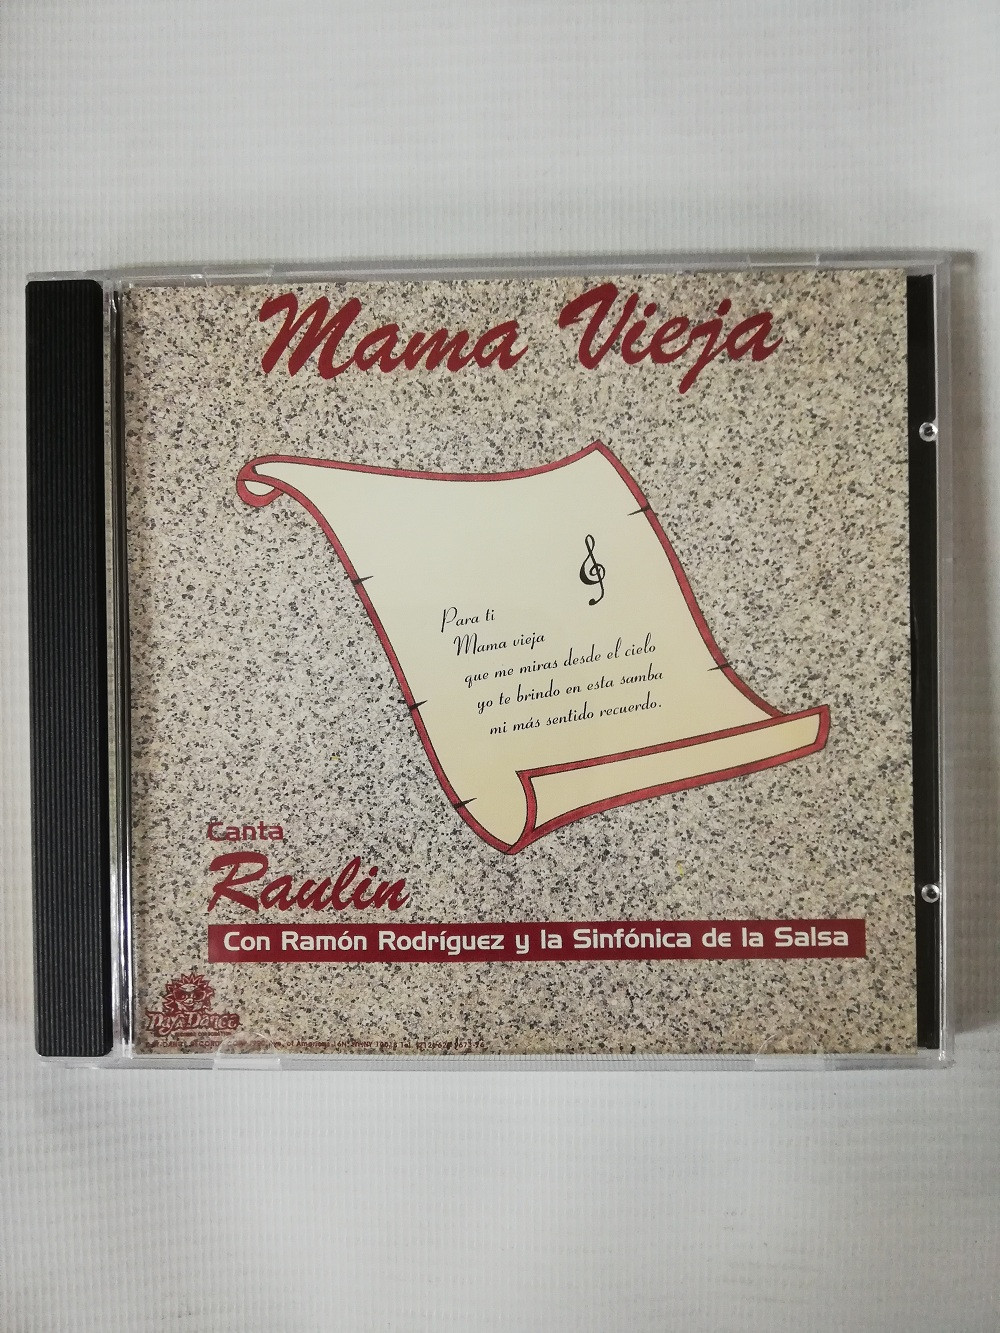 Imagen CD RAULIN CON RAMÓN RODRIGUEZ Y LA SINFONIA DE LA SALSA - MAMA VIEJA 1